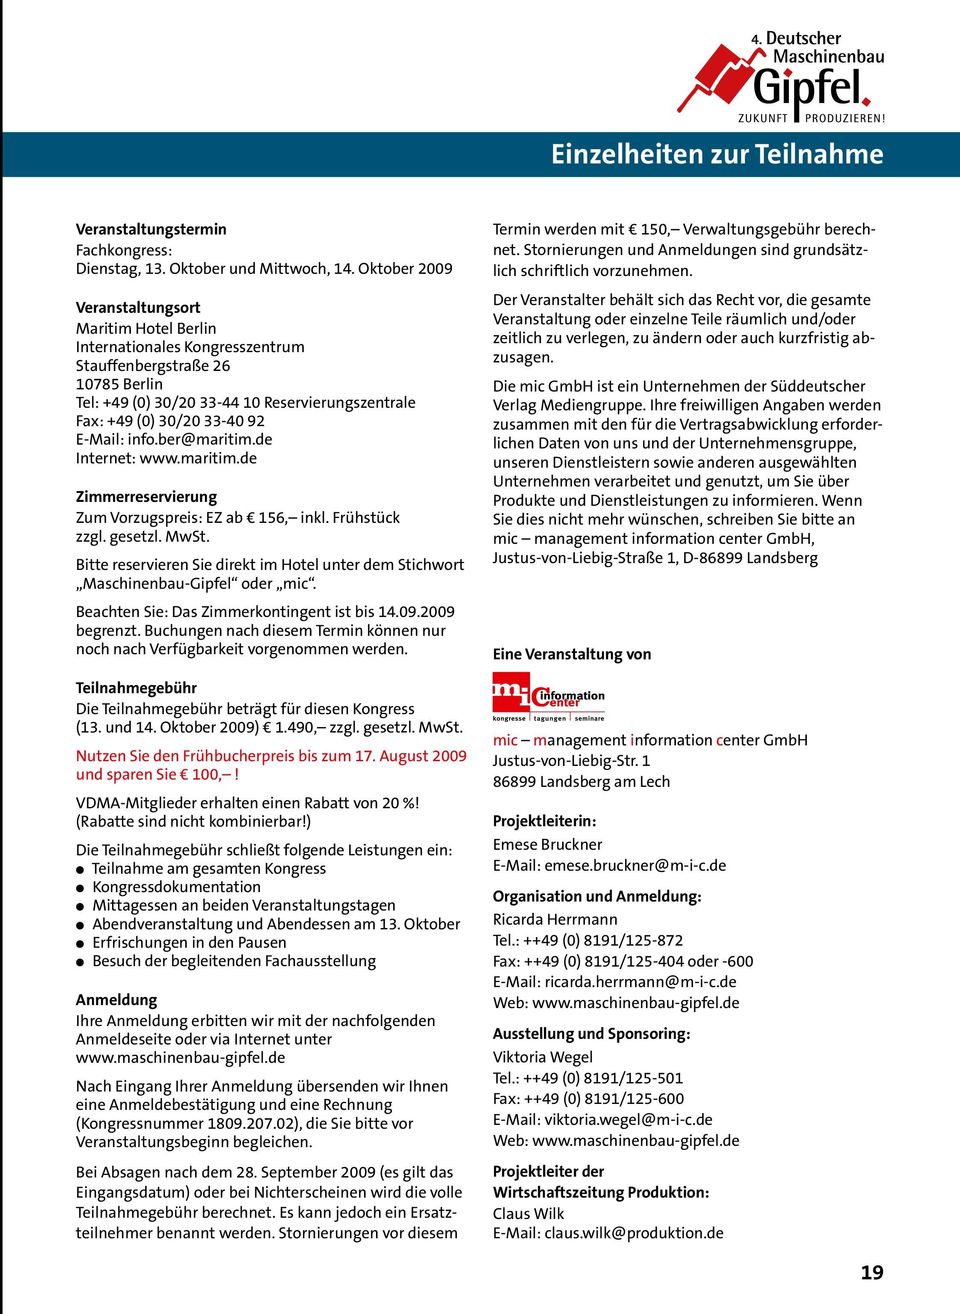 E-Mail: info.ber@maritim.de Internet: www.maritim.de Zimmerreservierung Zum Vorzugspreis: EZ ab 156, inkl. Frühstück zzgl. gesetzl. MwSt.